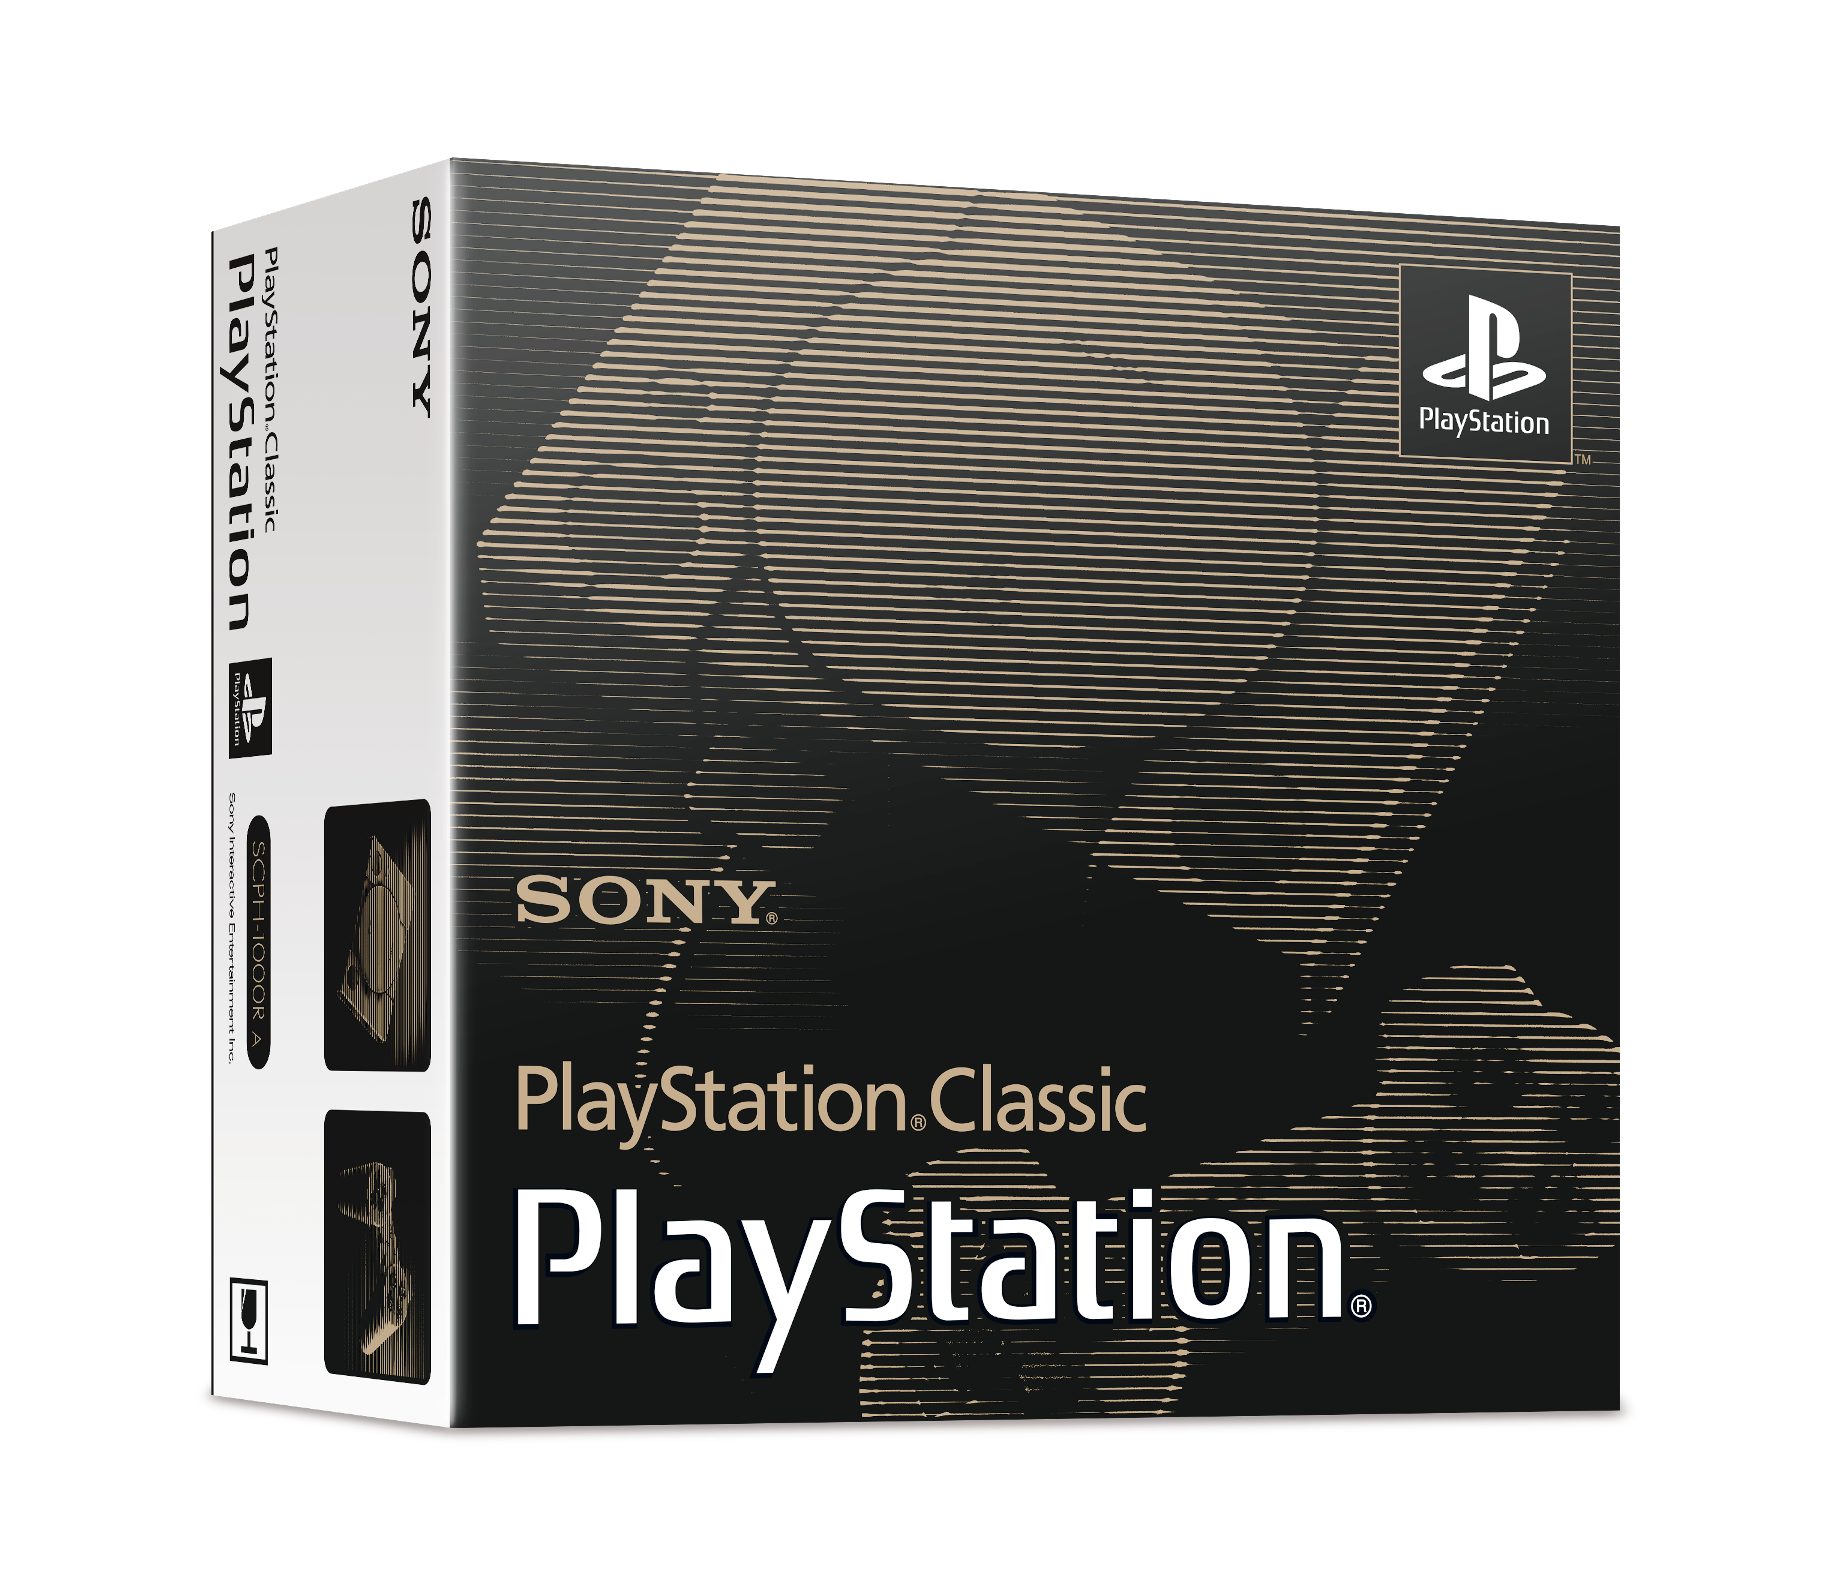 ประกาศราคาไทย PlayStation Classic ขาย 3,590 บาท พร้อมประกาศรายชื่อ 20 เกมในเครื่อง